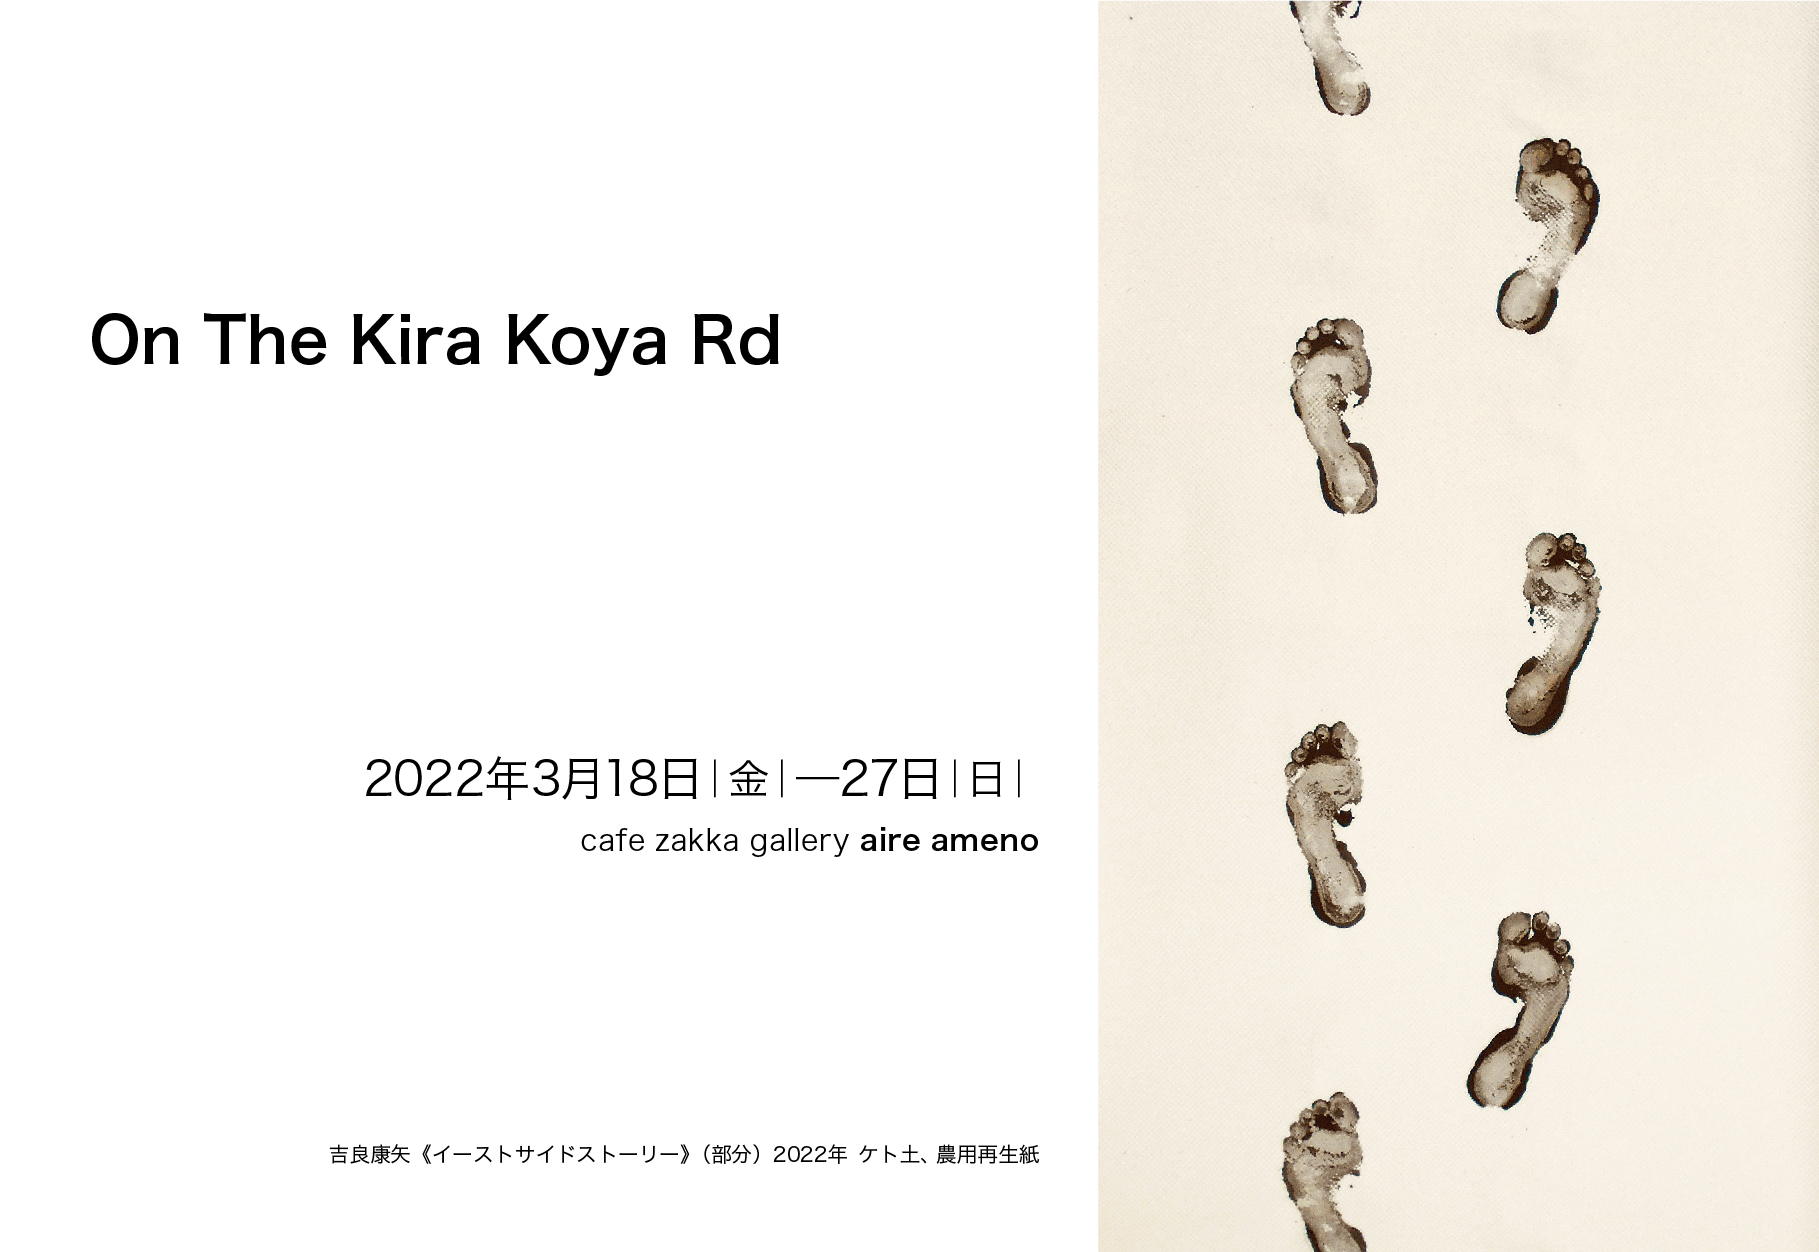 吉良康矢 個展 On The Kira Koya Rd Midcoro